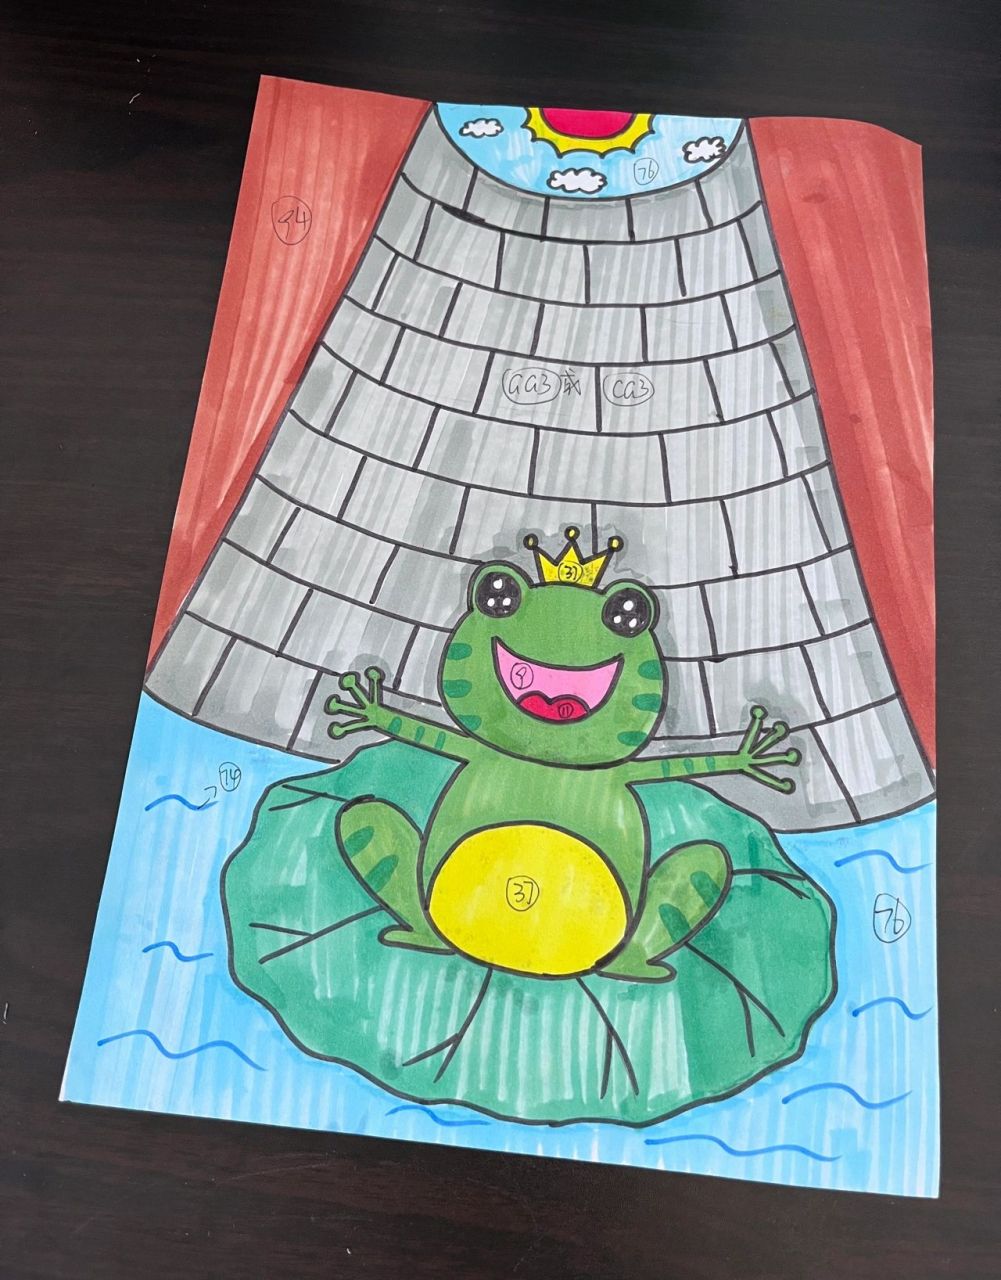 井底之蛙简笔画 彩色图片